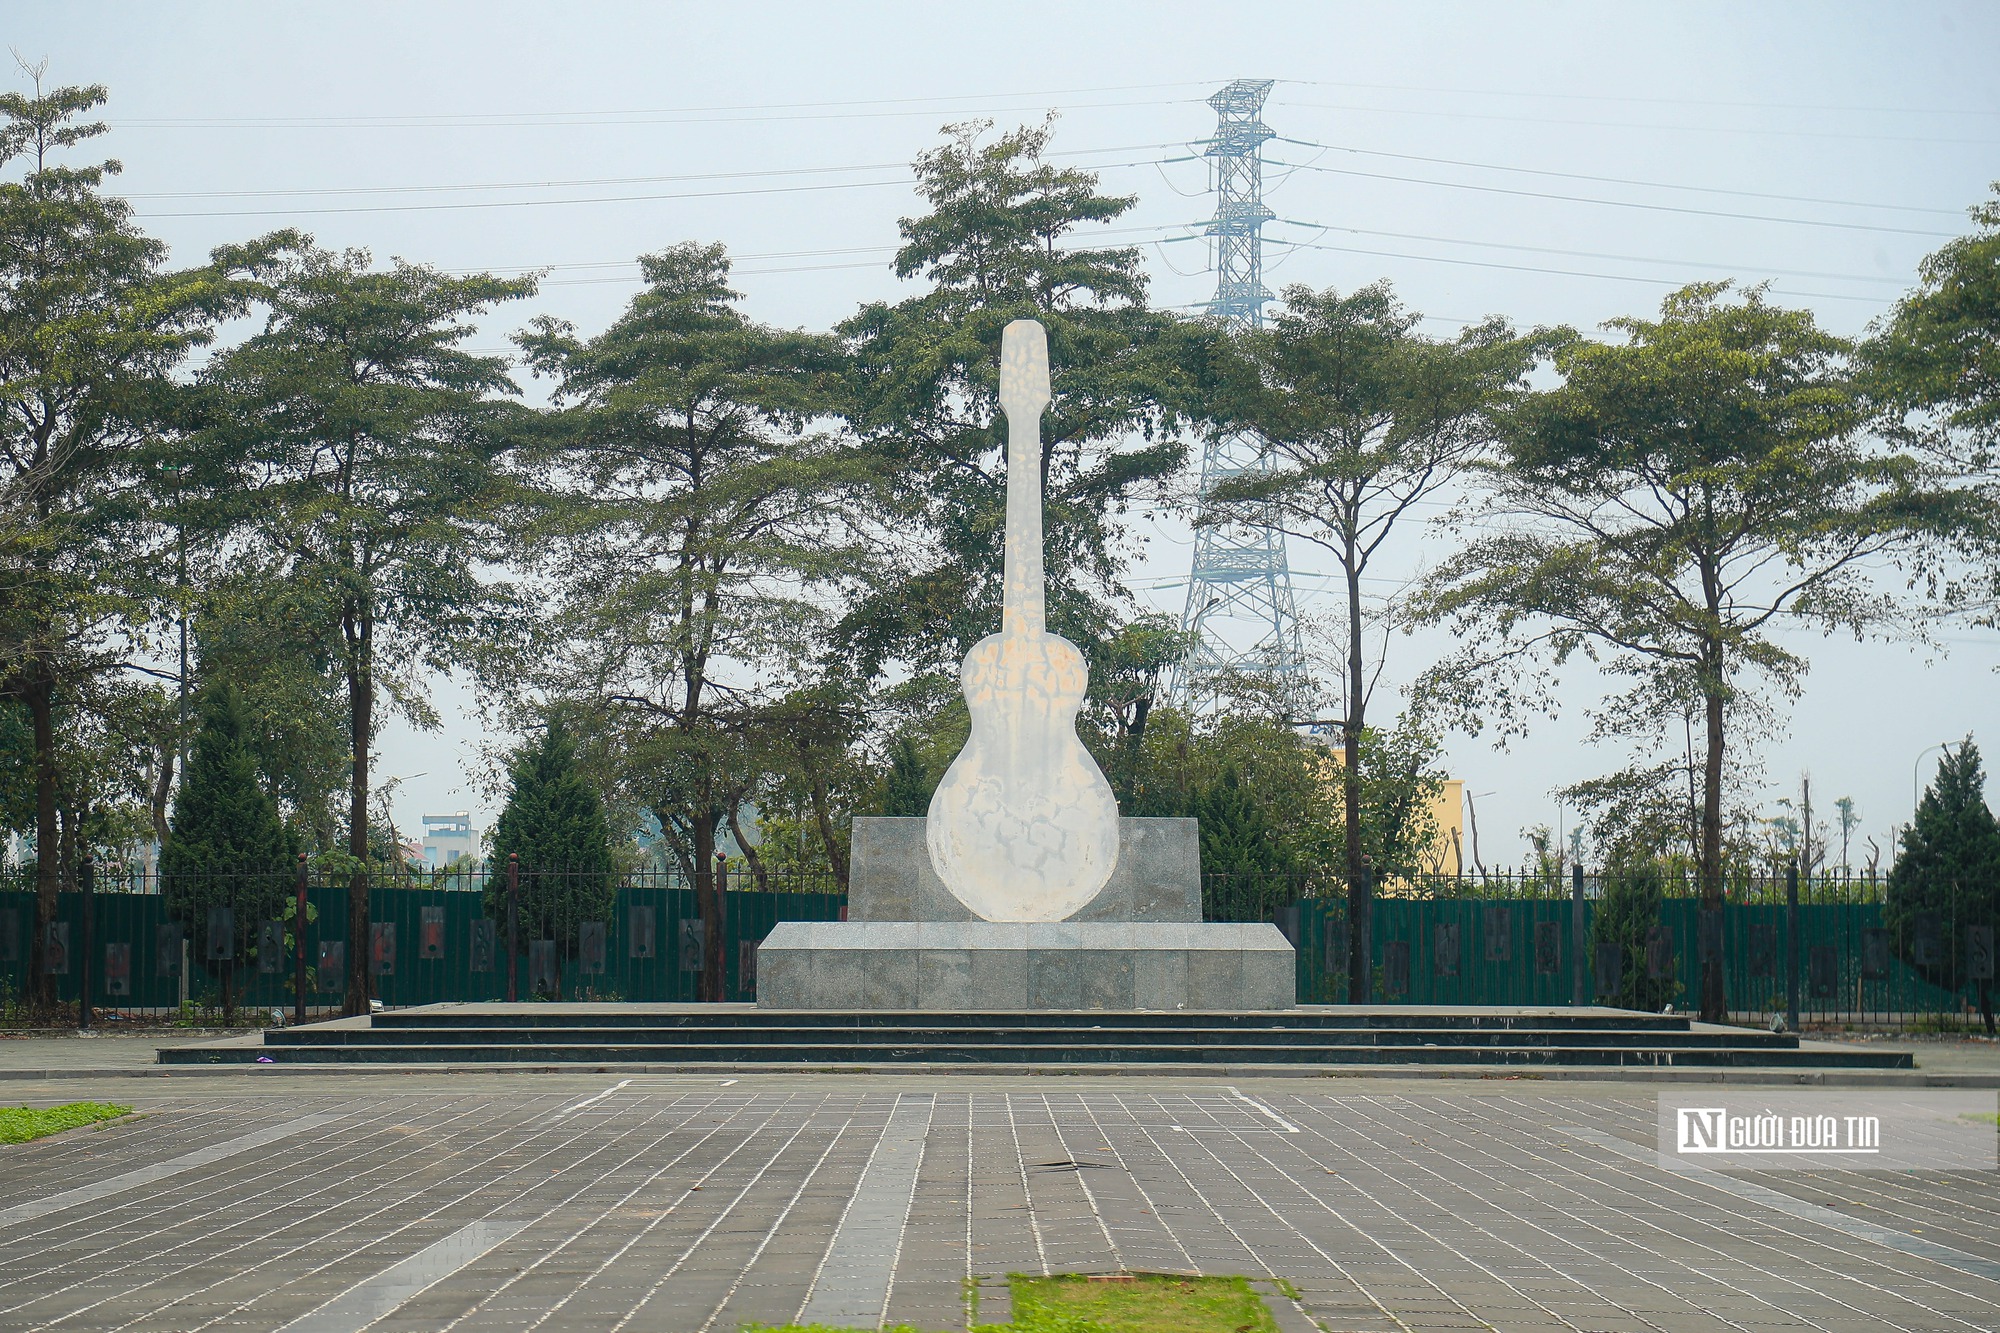 Hà Nội: Cận cảnh công viên hình cây đàn guitar trị giá 200 tỷ đồng- Ảnh 5.